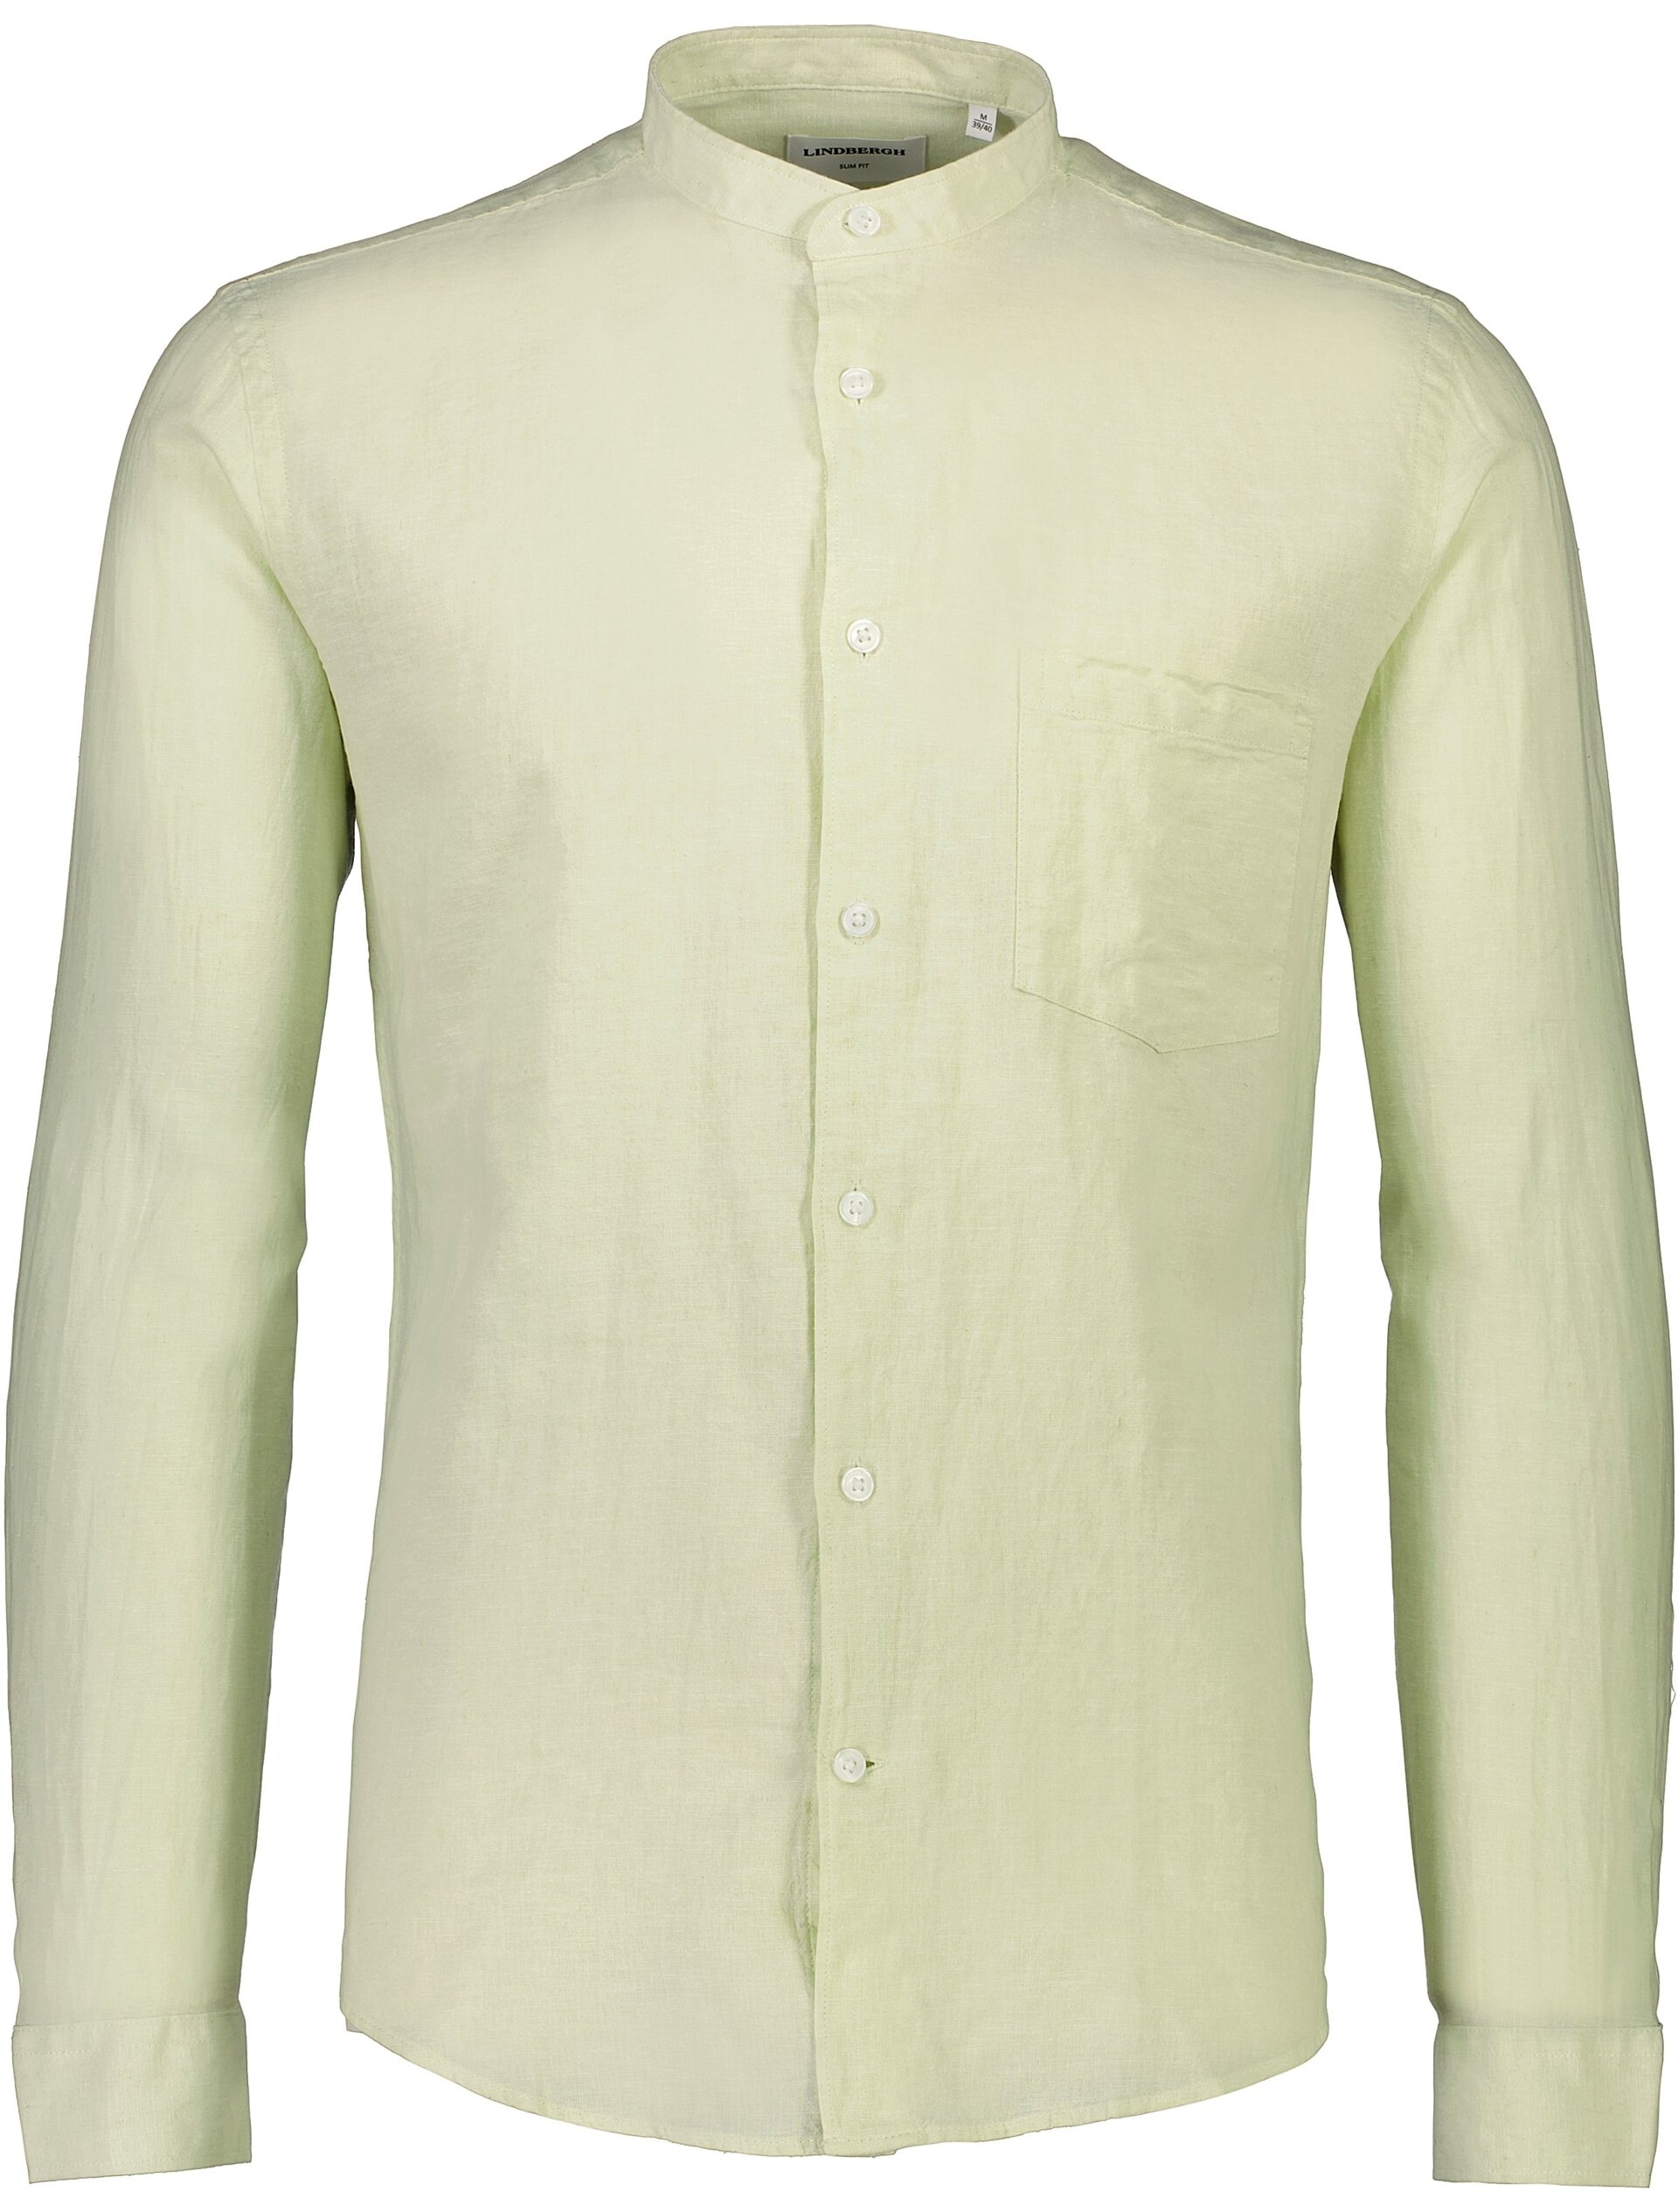 Lindbergh Linen shirt green / mint